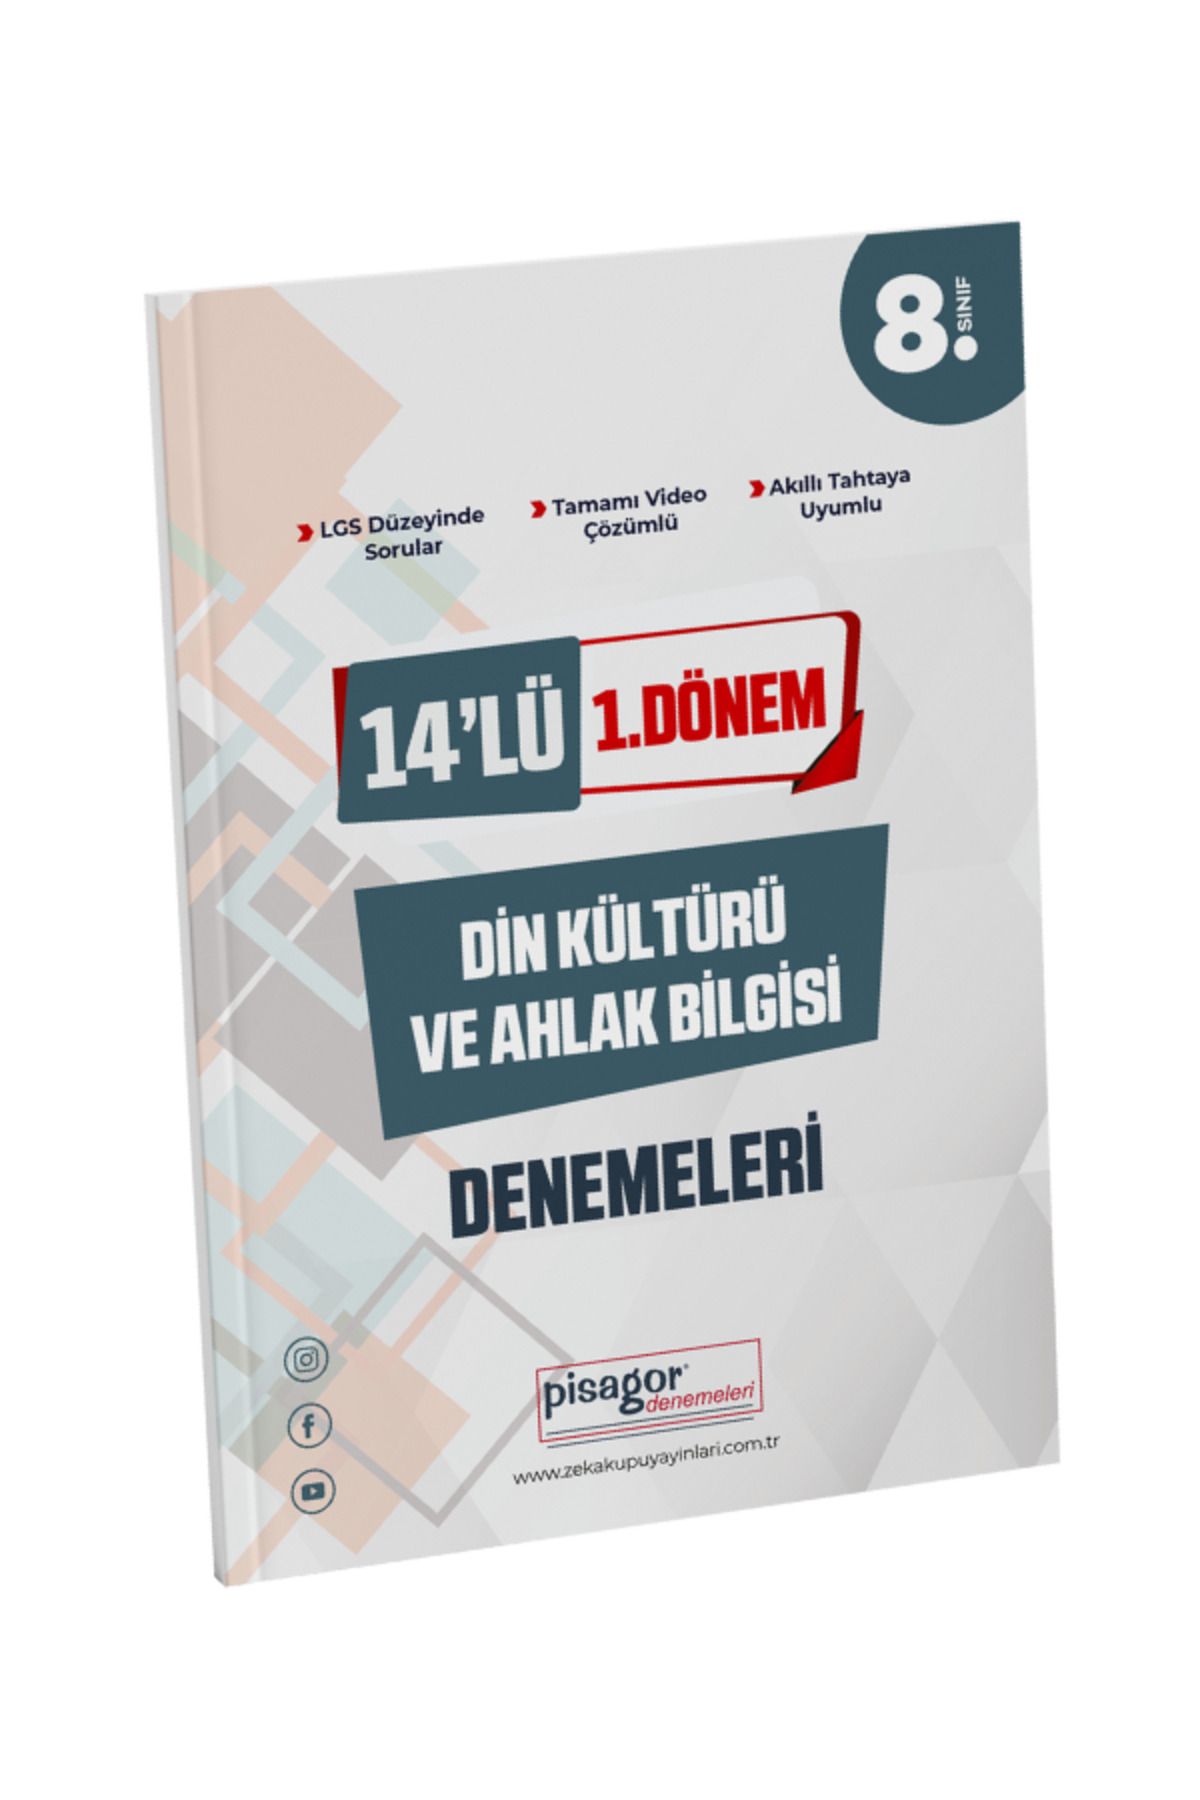 Zeka Küpü Yayınları Pisagor 8. Snf 14'lü 1. Dönem Din Kültürü Ve Ahlak Bilgisi Branş Denemeleri